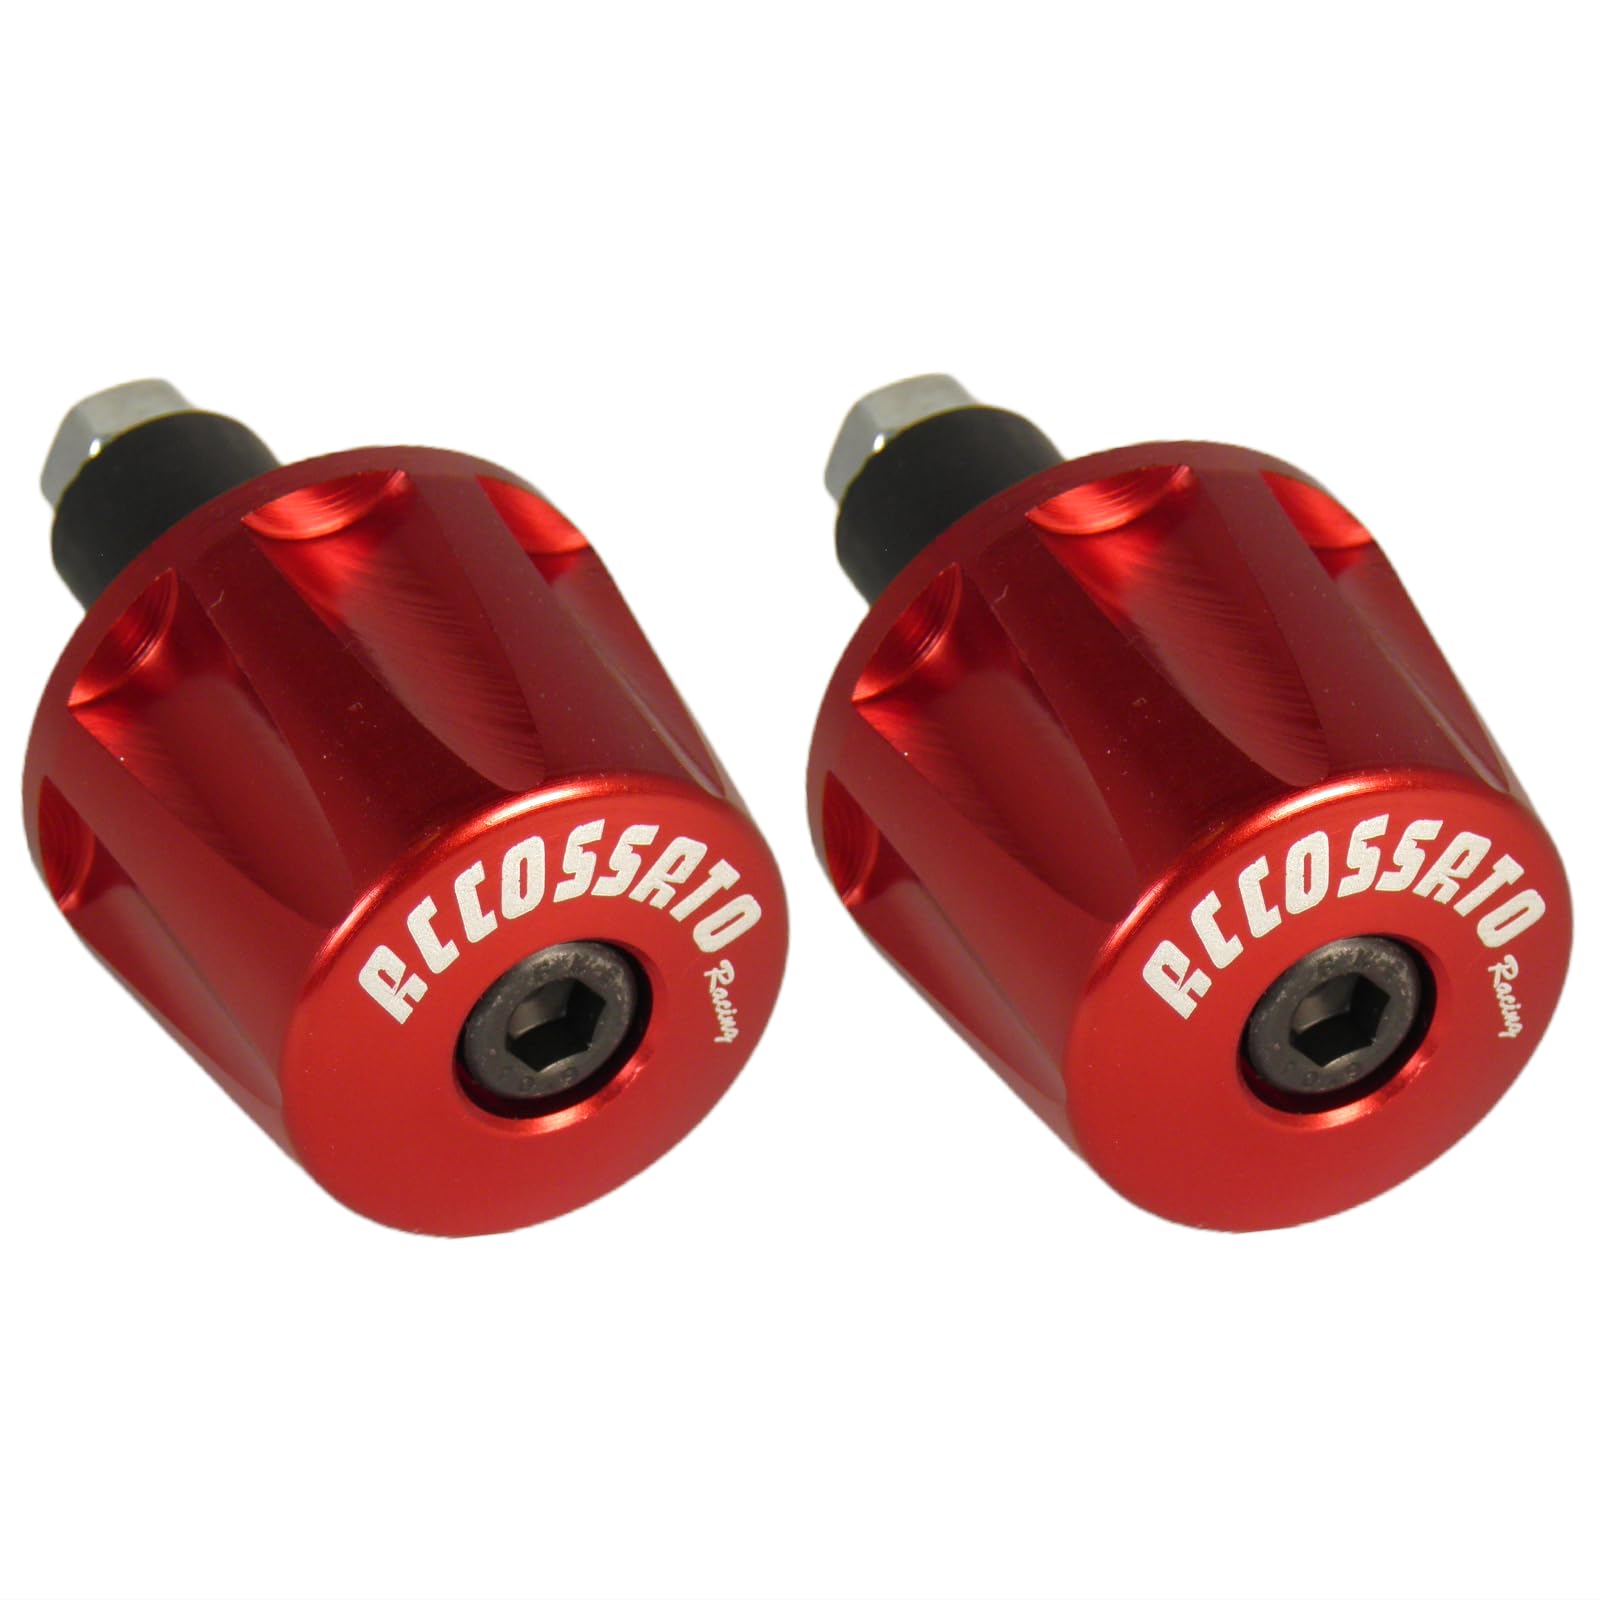 Paar rote Accossato Gegengewichte für Lenker mit Innenloch von 12 mm bis 20 mm für Benelli TNT 1130 R160 von 2010 bis 2014 (CC 1130) von ACCOSSATO